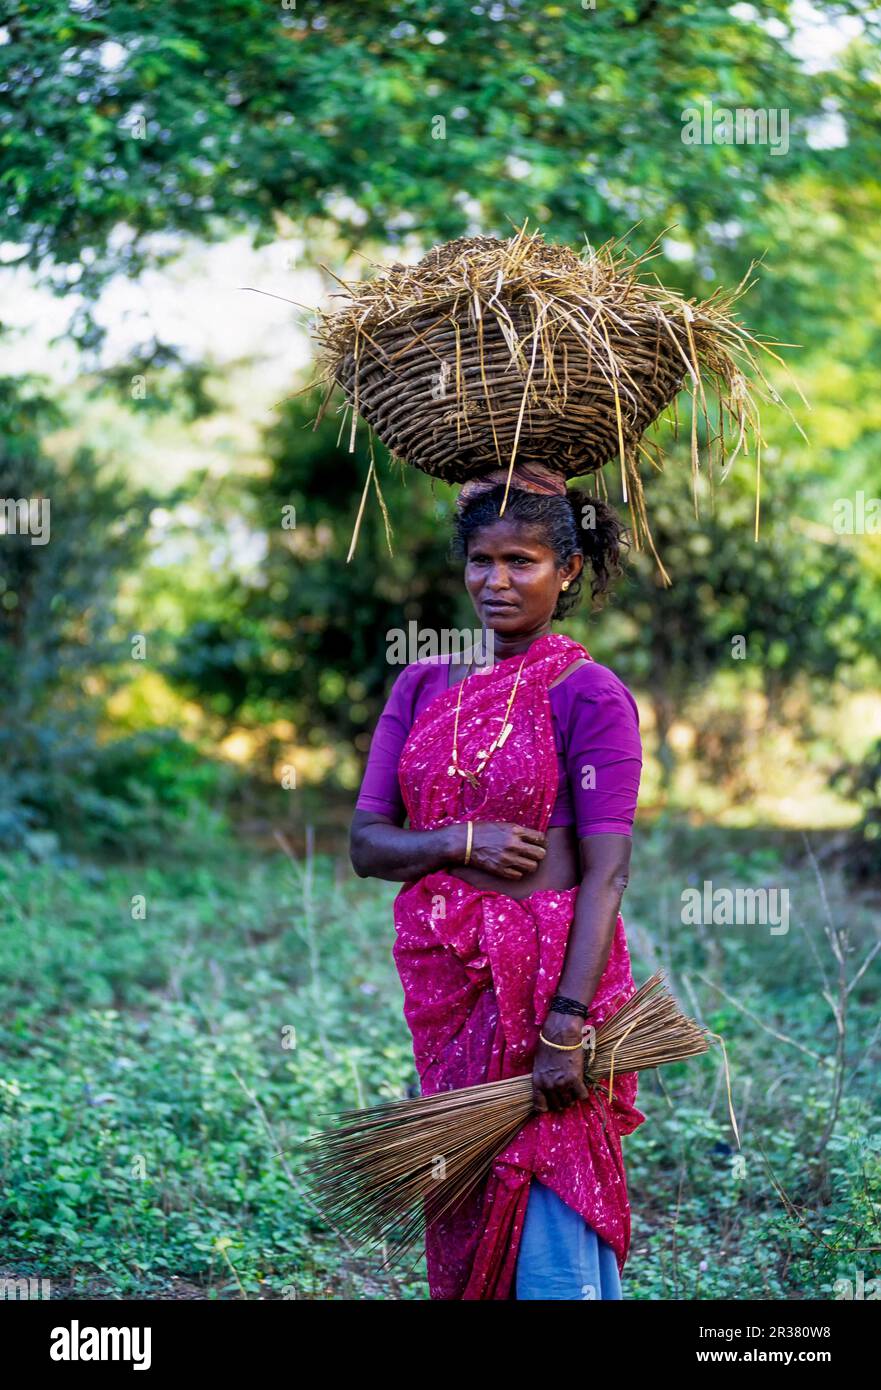 Una donna del villaggio che trasporta un cestino pieno di concime organico sulla testa con il bastone della scopa del cocco sulla mano, Tamil Nadu, India del sud, India, Asia Foto Stock